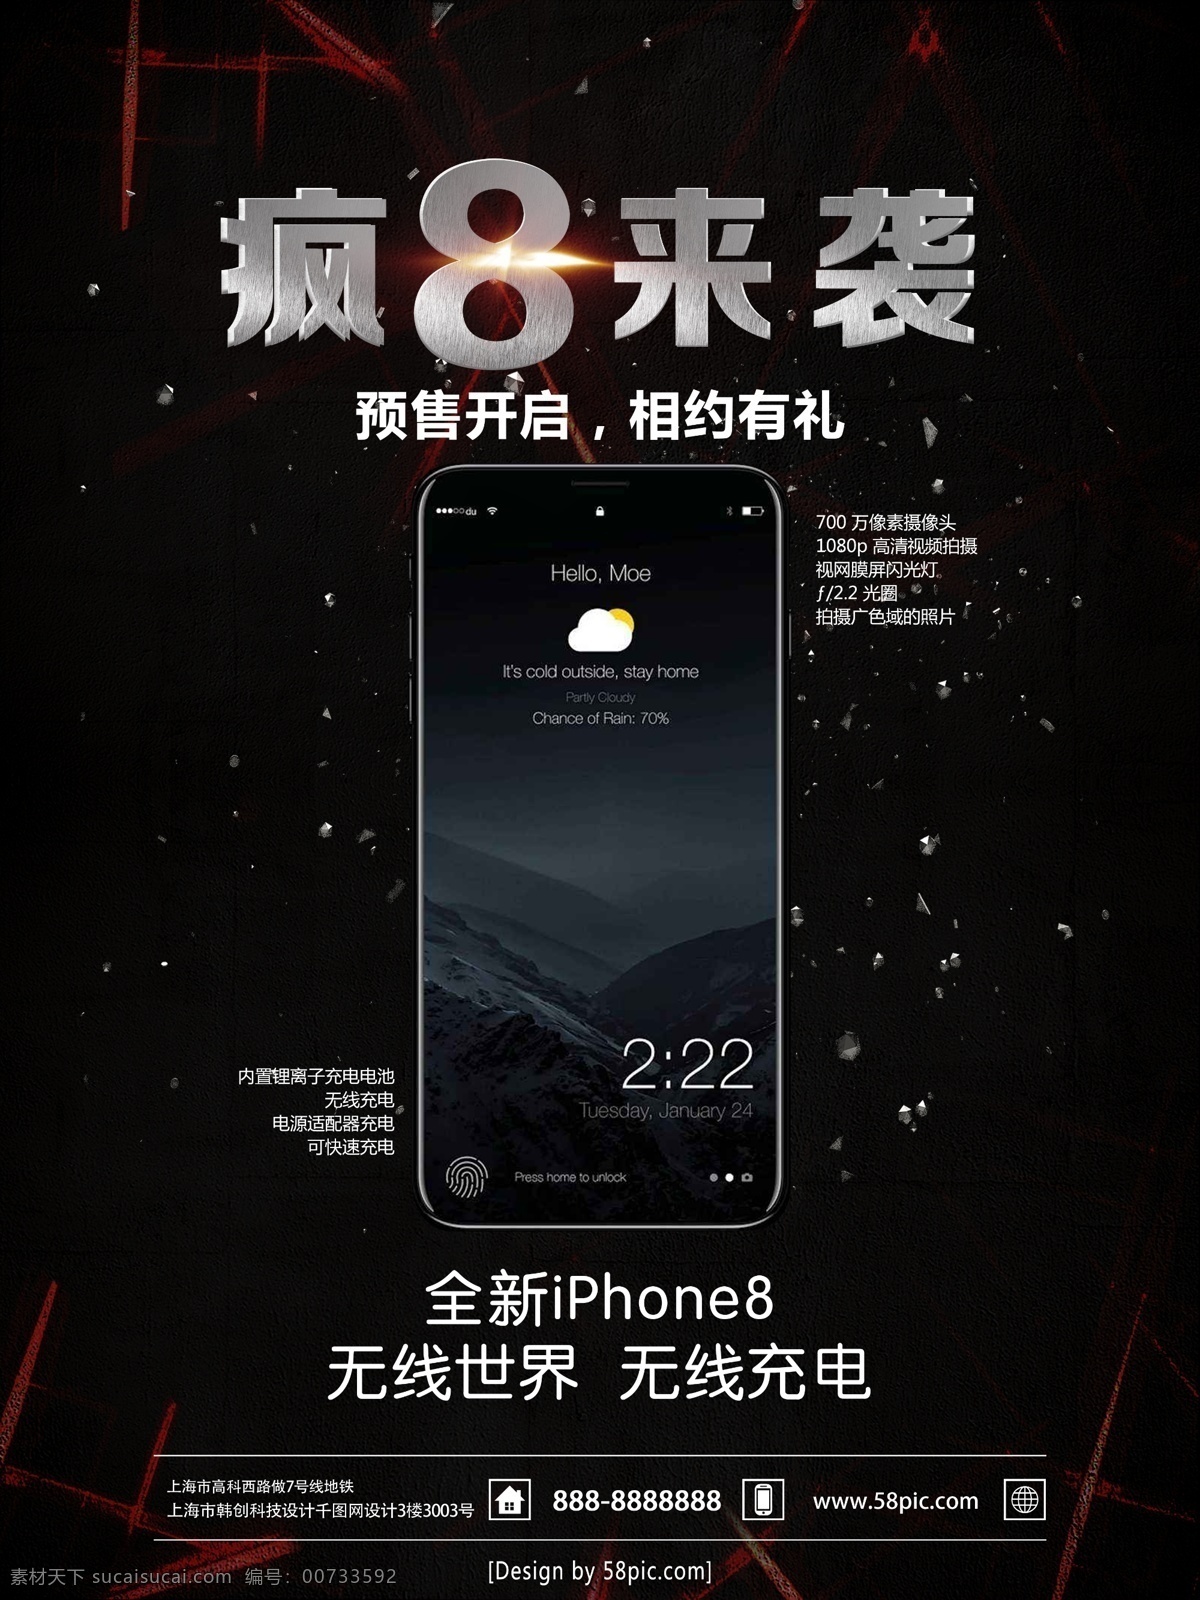 酷 黑 绚丽 苹果 手机 宣传海报 苹果手机 手机海报 手机预售海报 苹果手机专场 手机数码 苹果手机上市 预售 海报